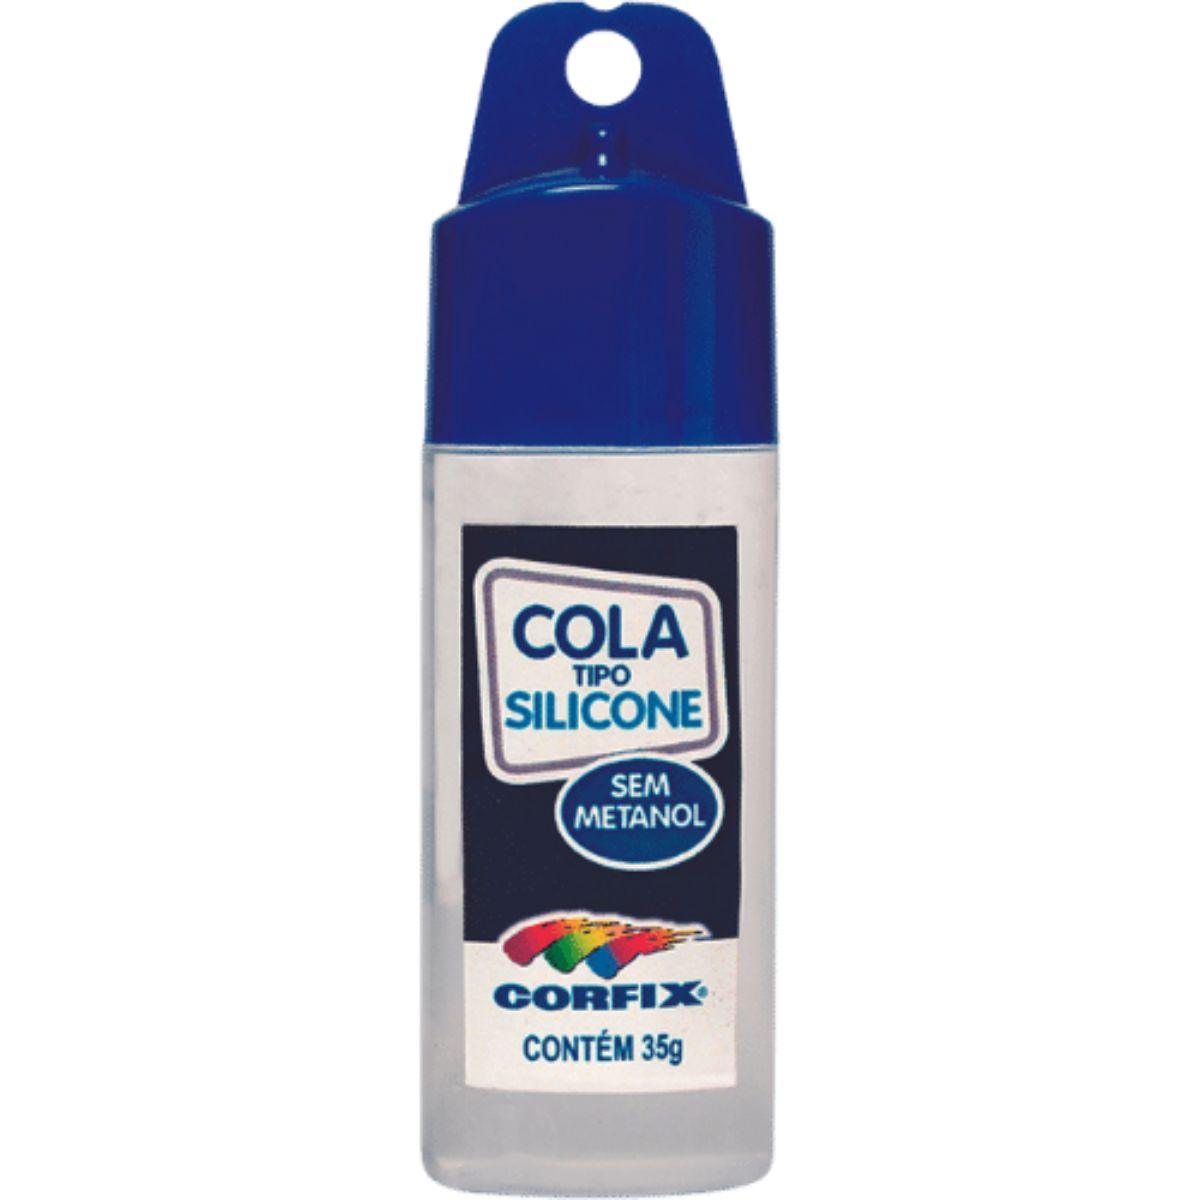 Cola Silicone Corfix 35g - Palácio da Arte